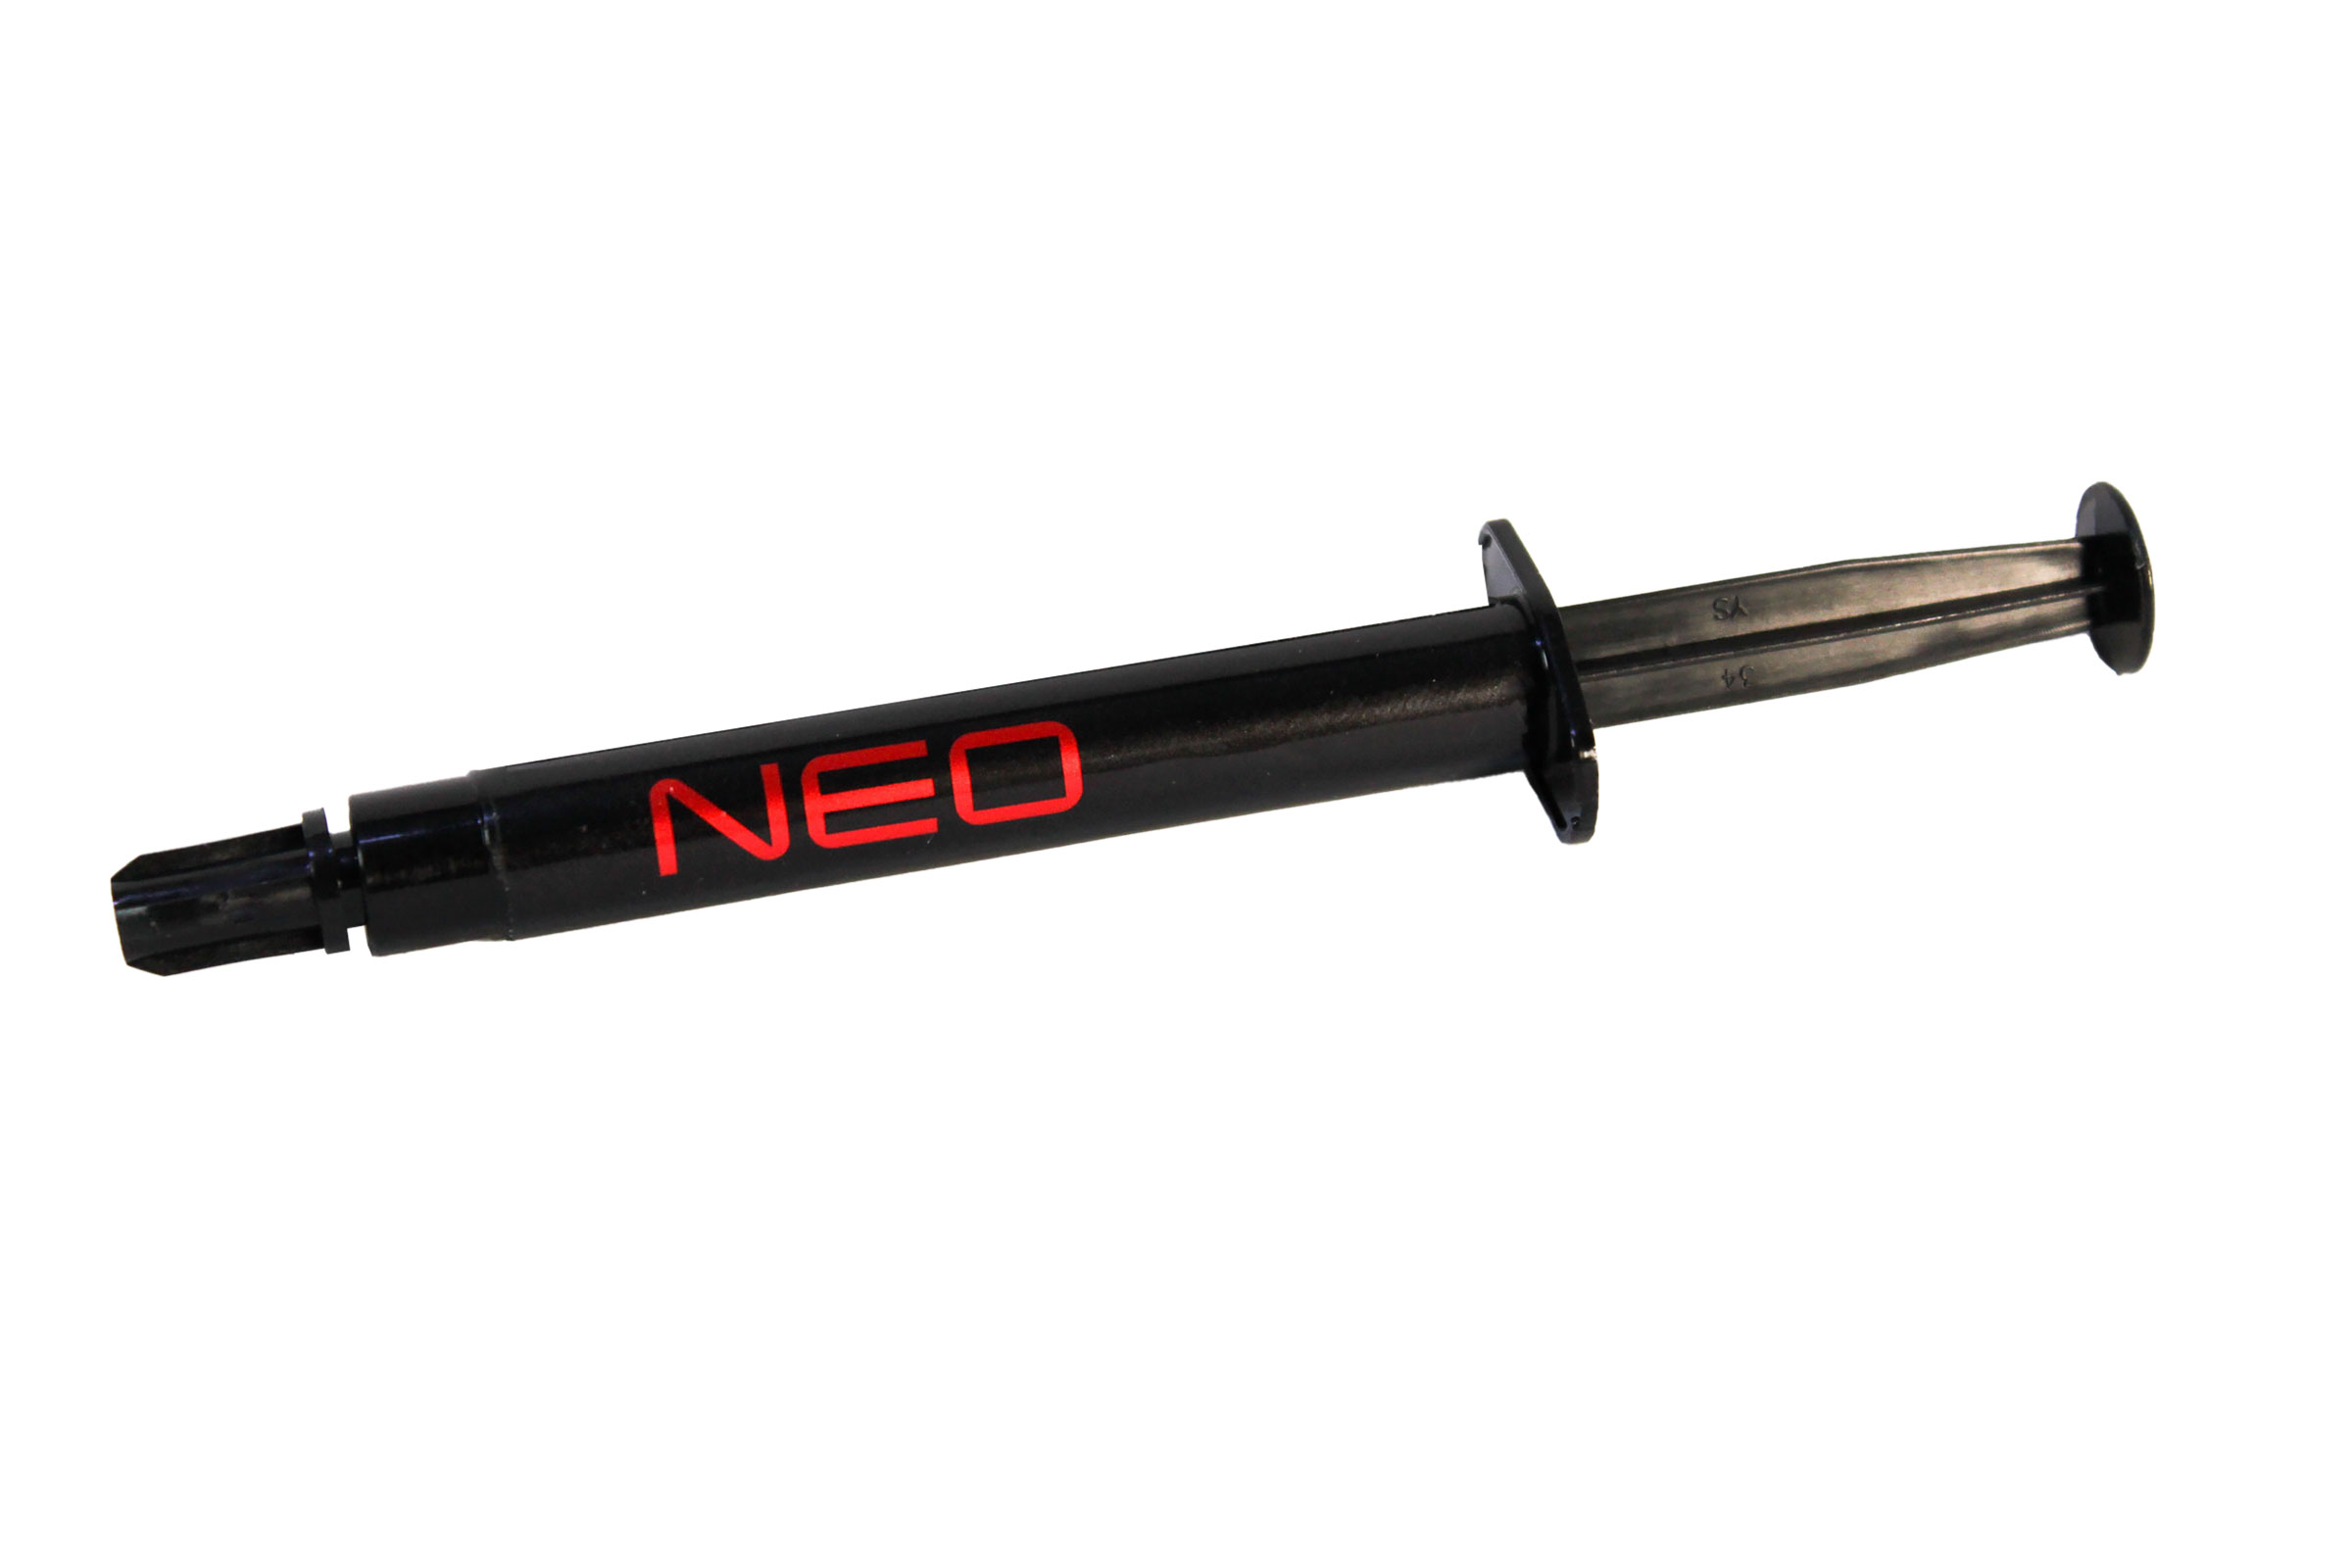 Le Thermal Hero NEO est une pâte thermique à base de silicone qui